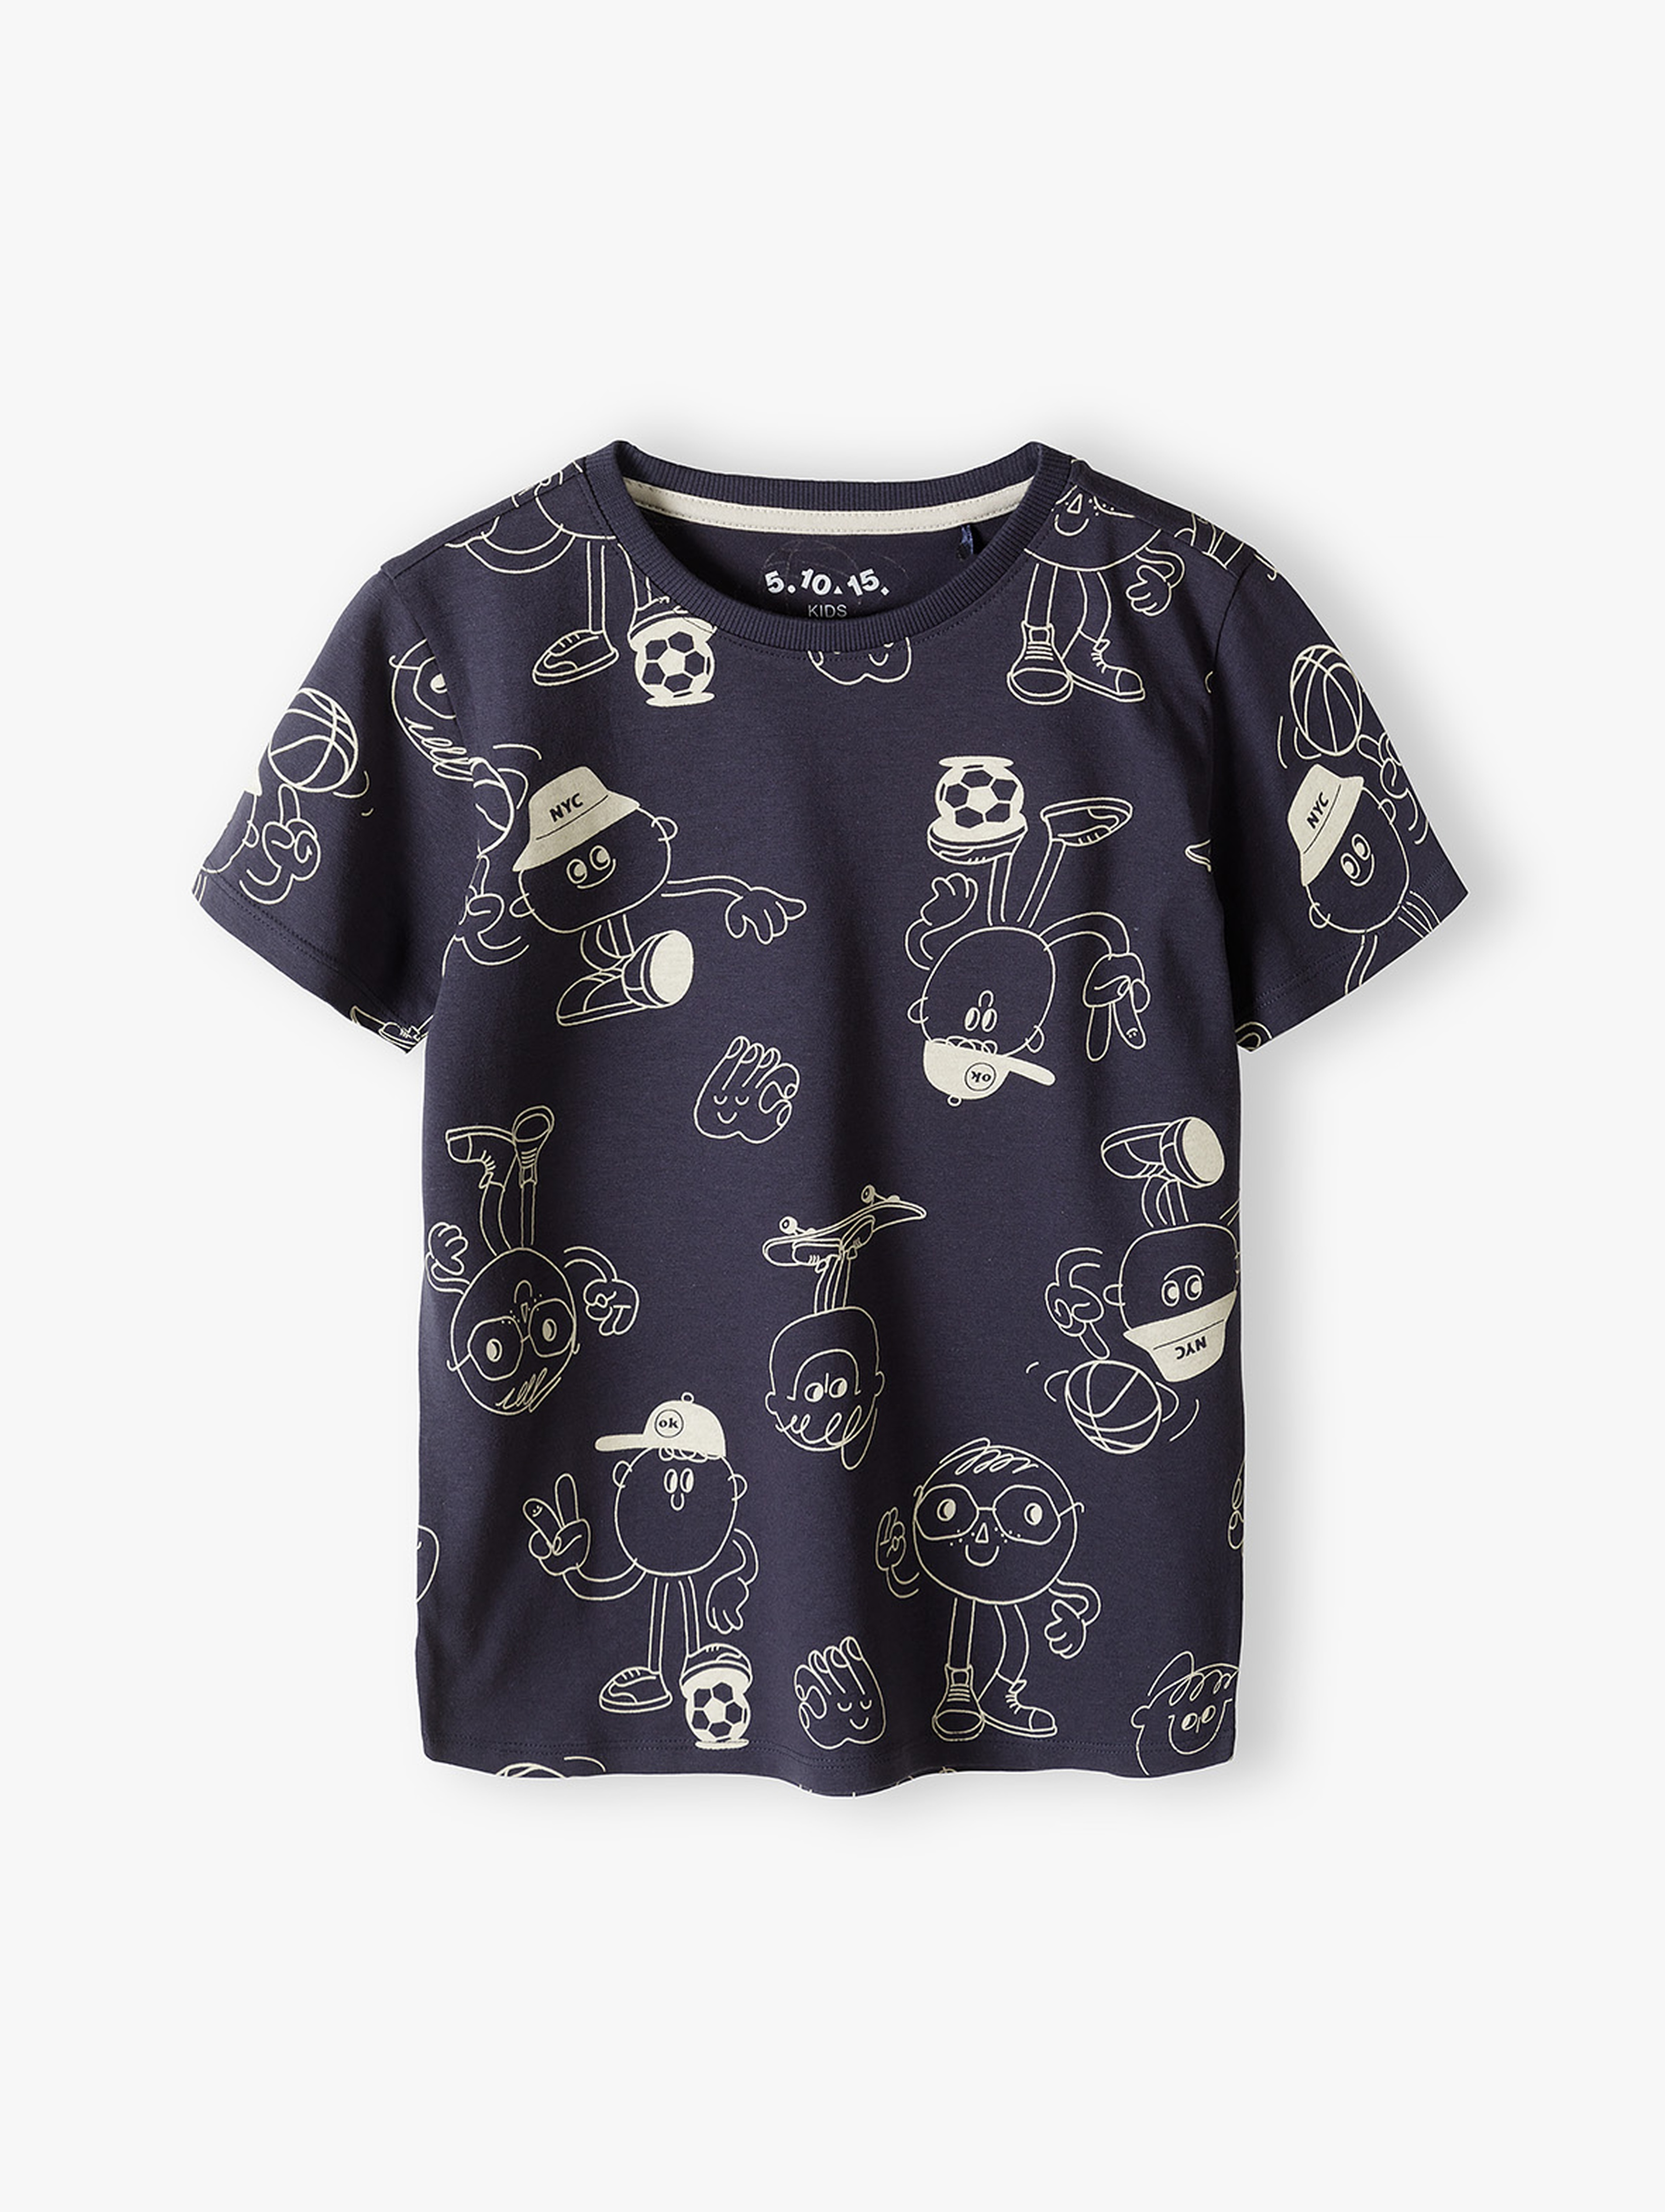 Bawełniany t-shirt dla chłopca z nadrukami - 5.10.15.